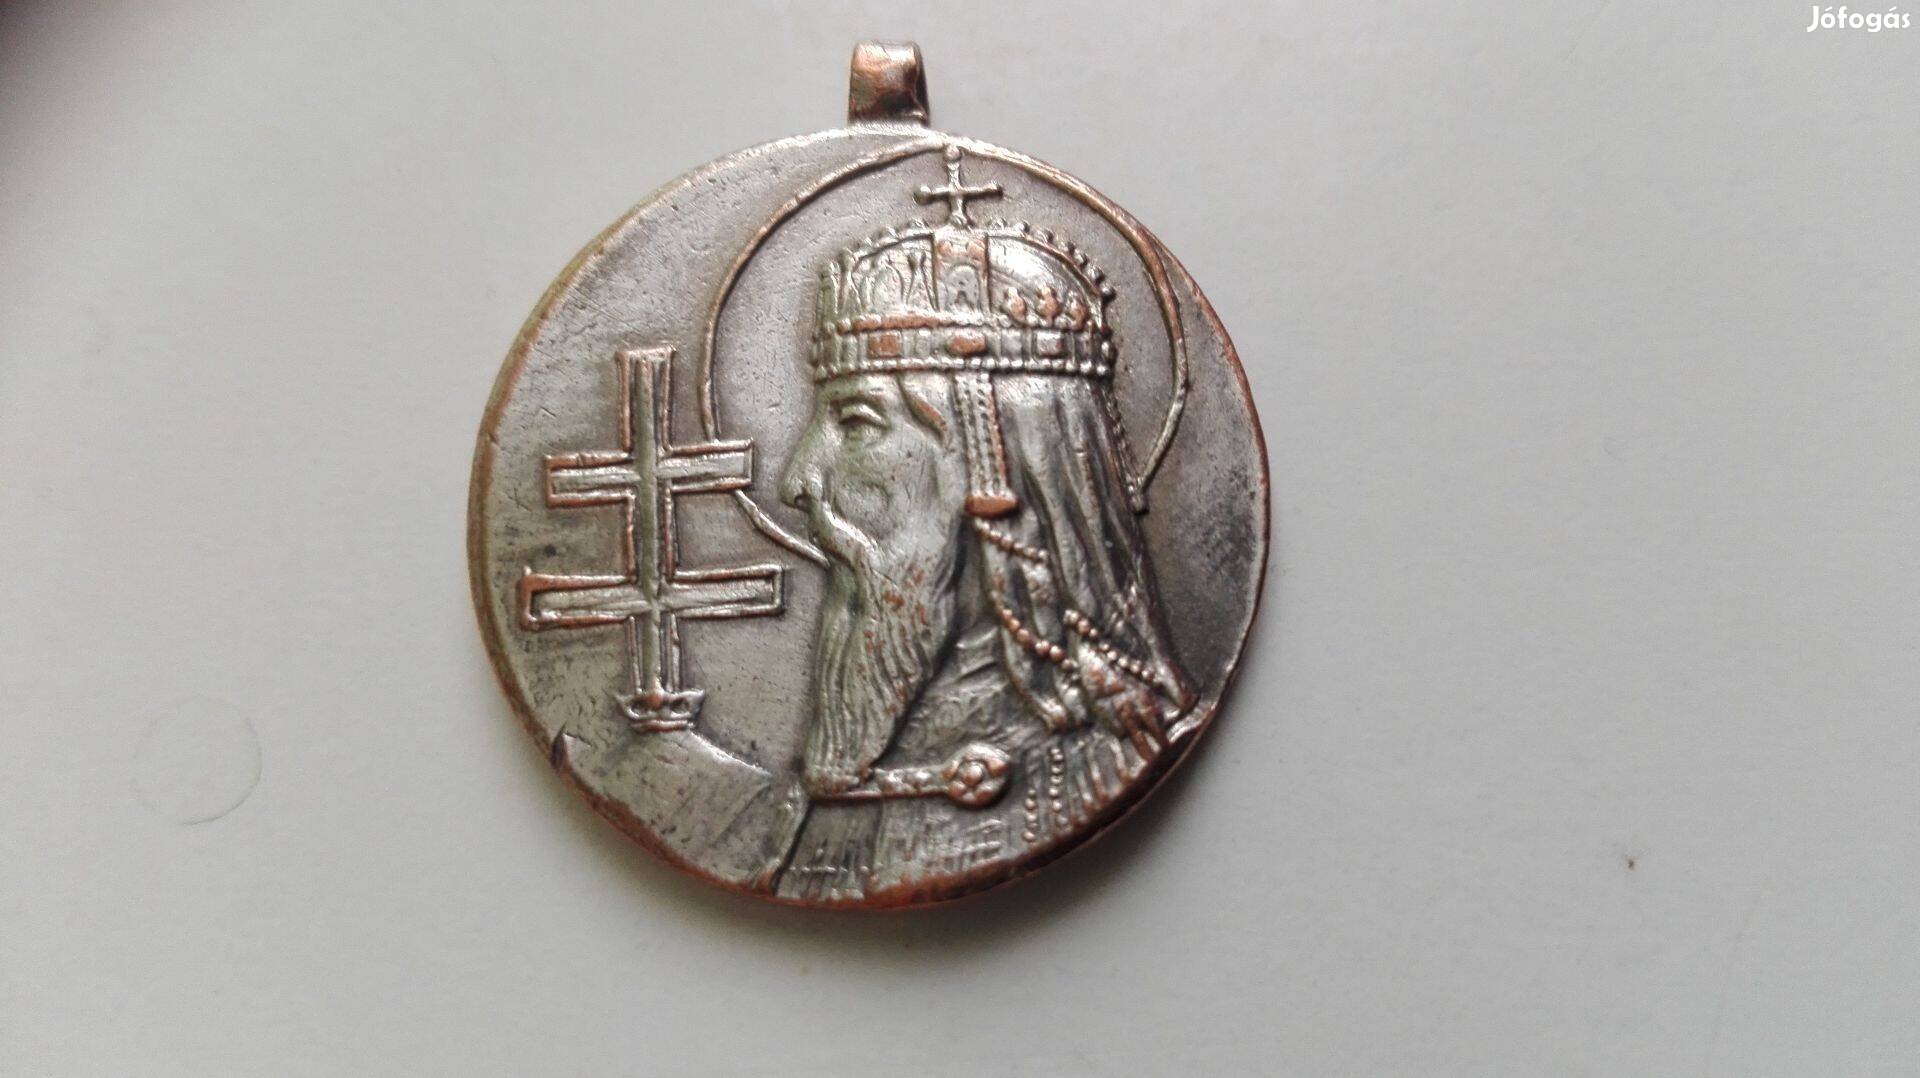 1938-as Szent István király jubileumi ezüstözőt medál Ritka db